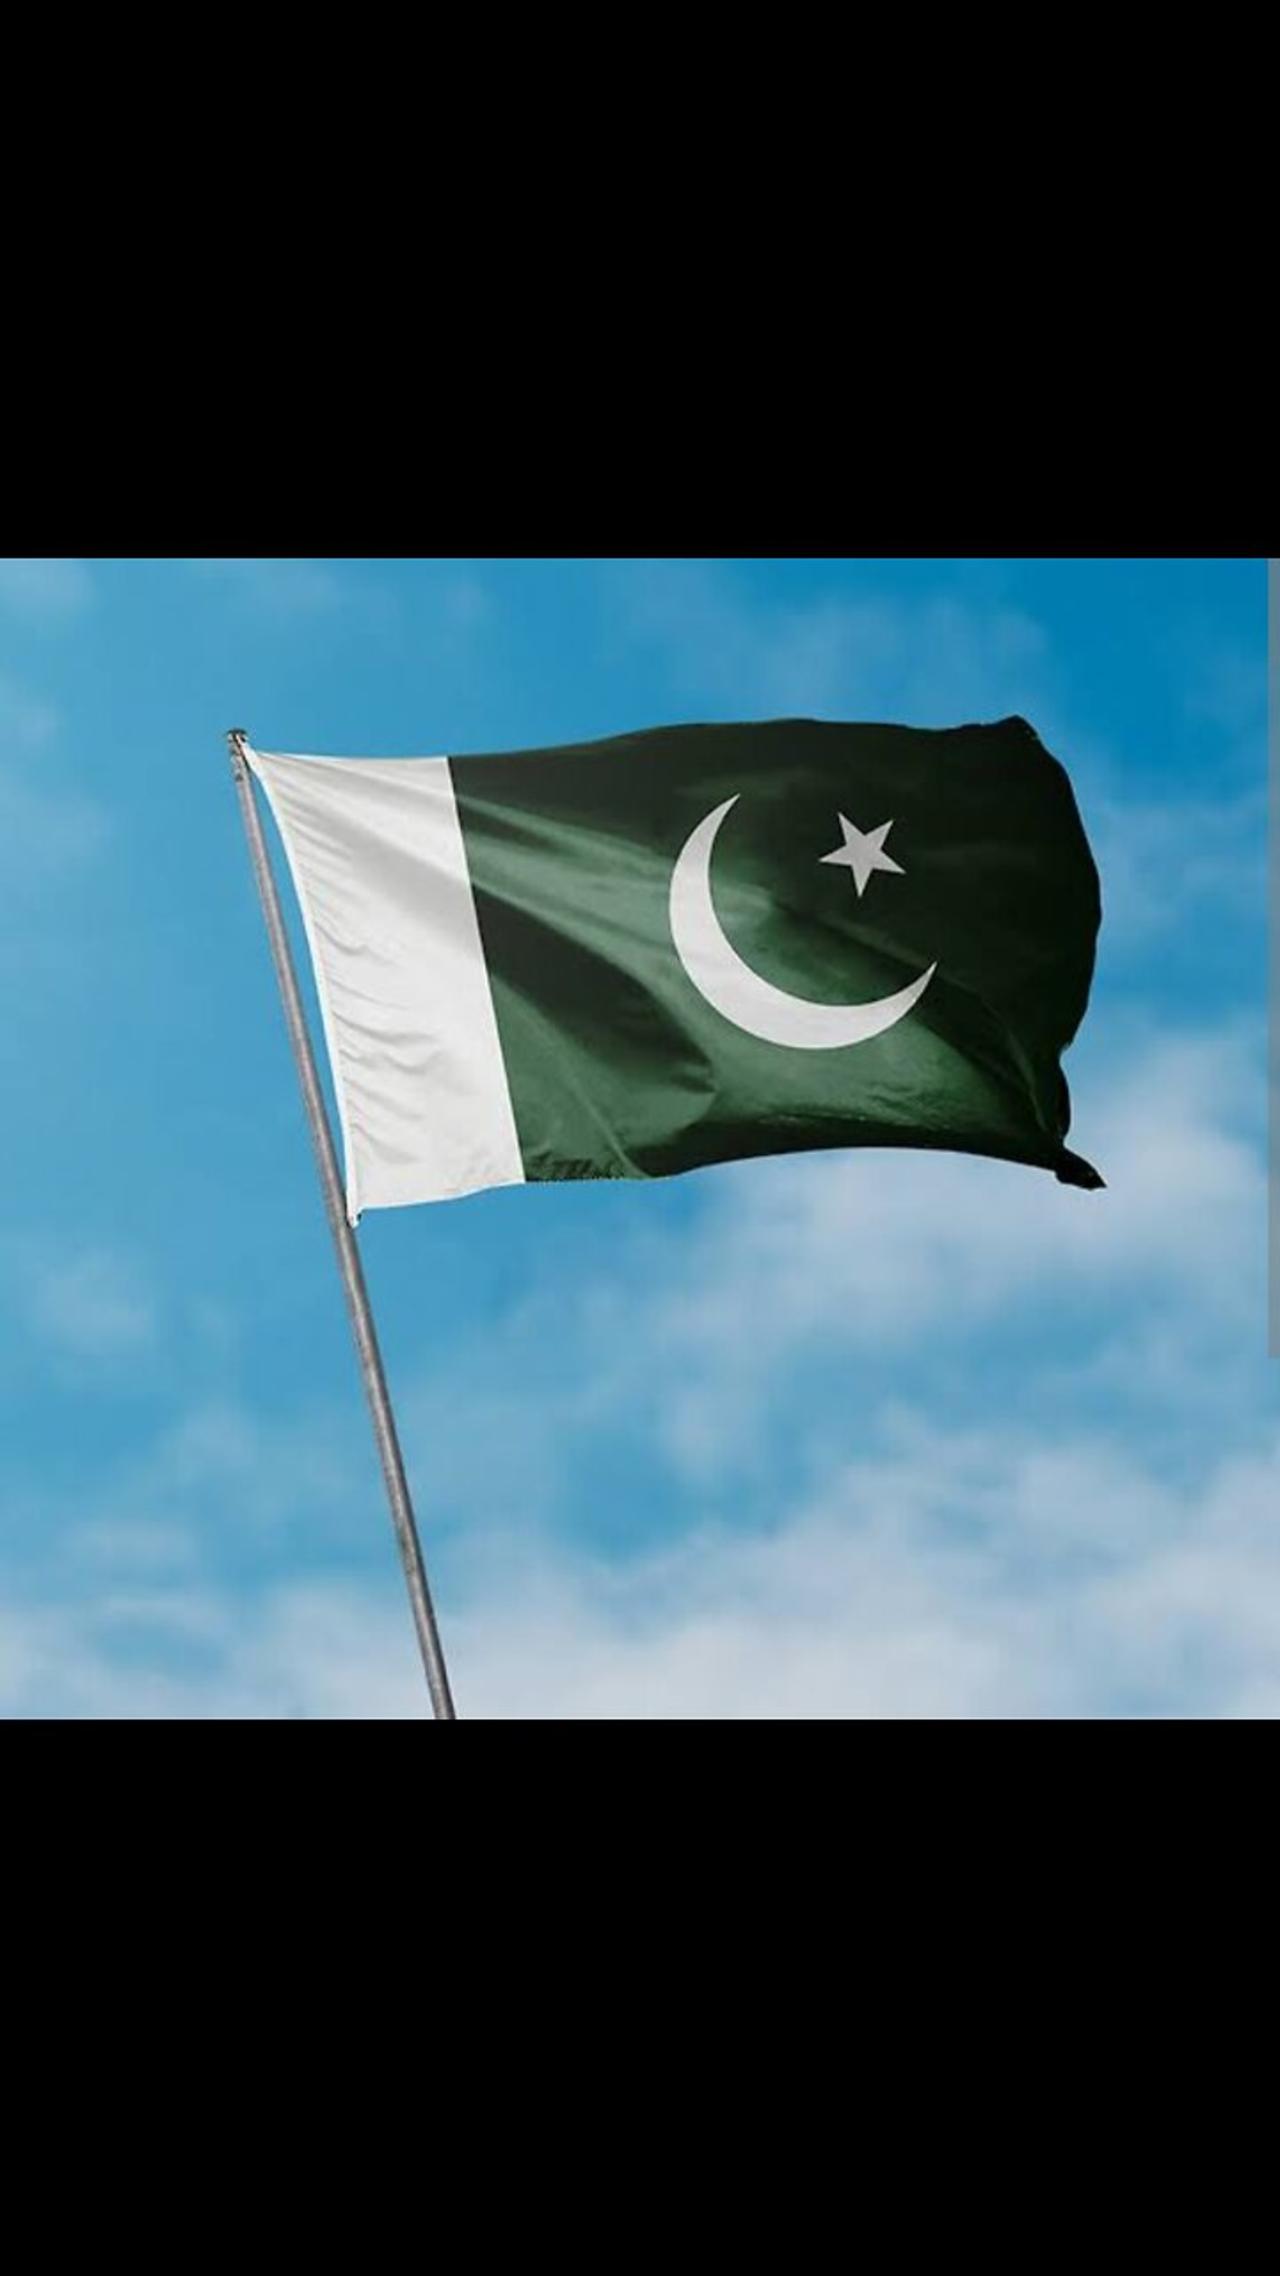 Love Pakistan.